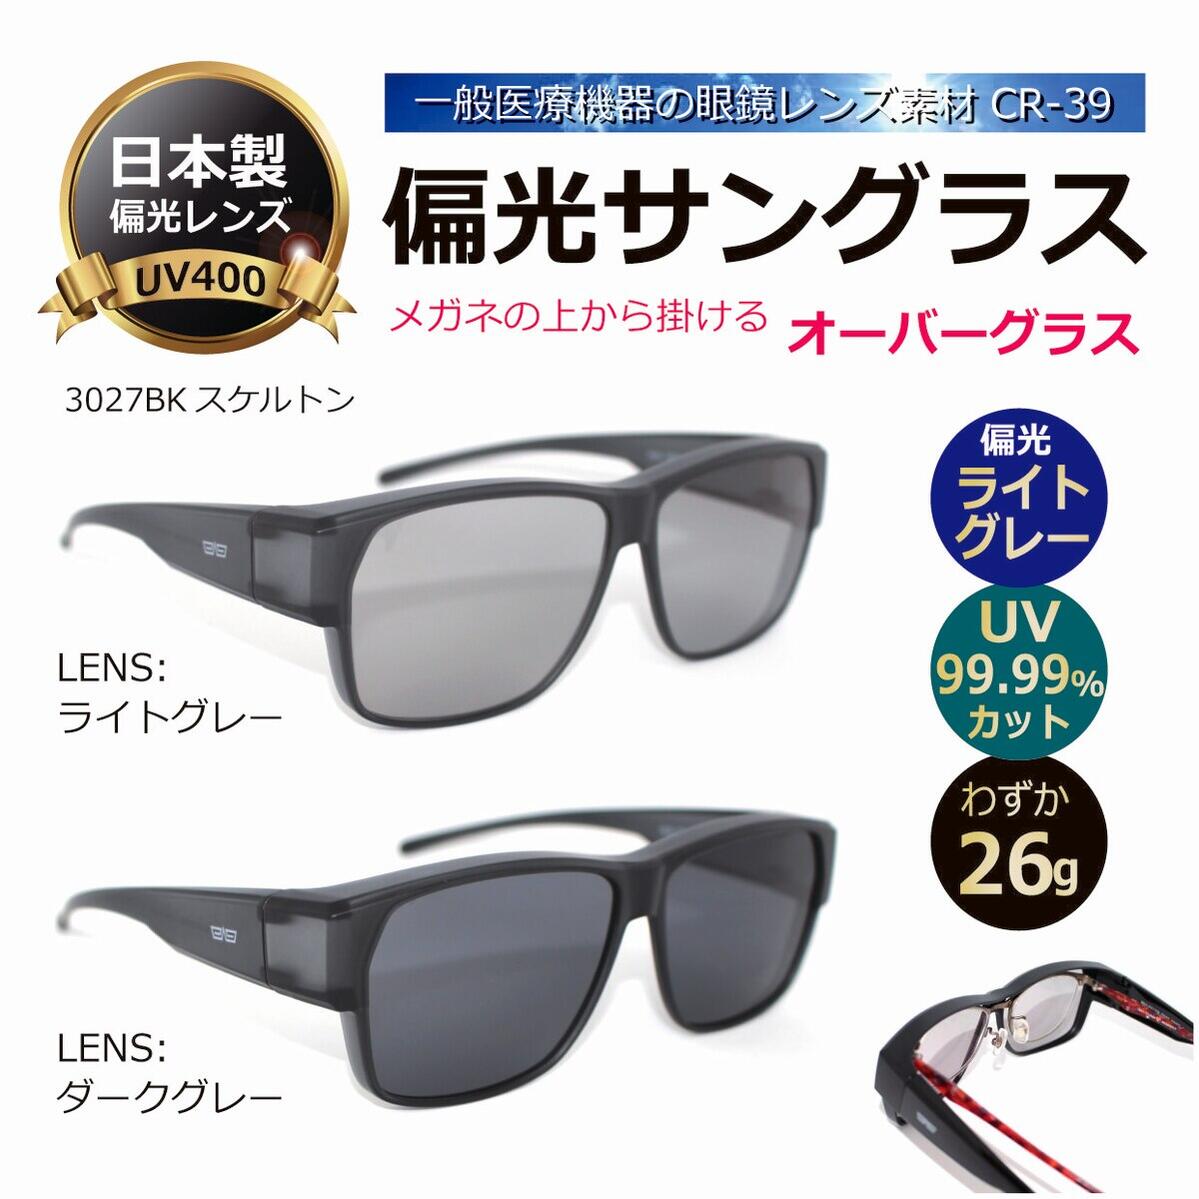 5年保証』 偏光サングラス 日本製偏光レンズ オーバーグラス 釣り ドライブに 一般医療機器の眼鏡レンズ素材CR-39を使用 UVカット メンズ 人気  メガネの上から掛ける 3027BKスケルトン